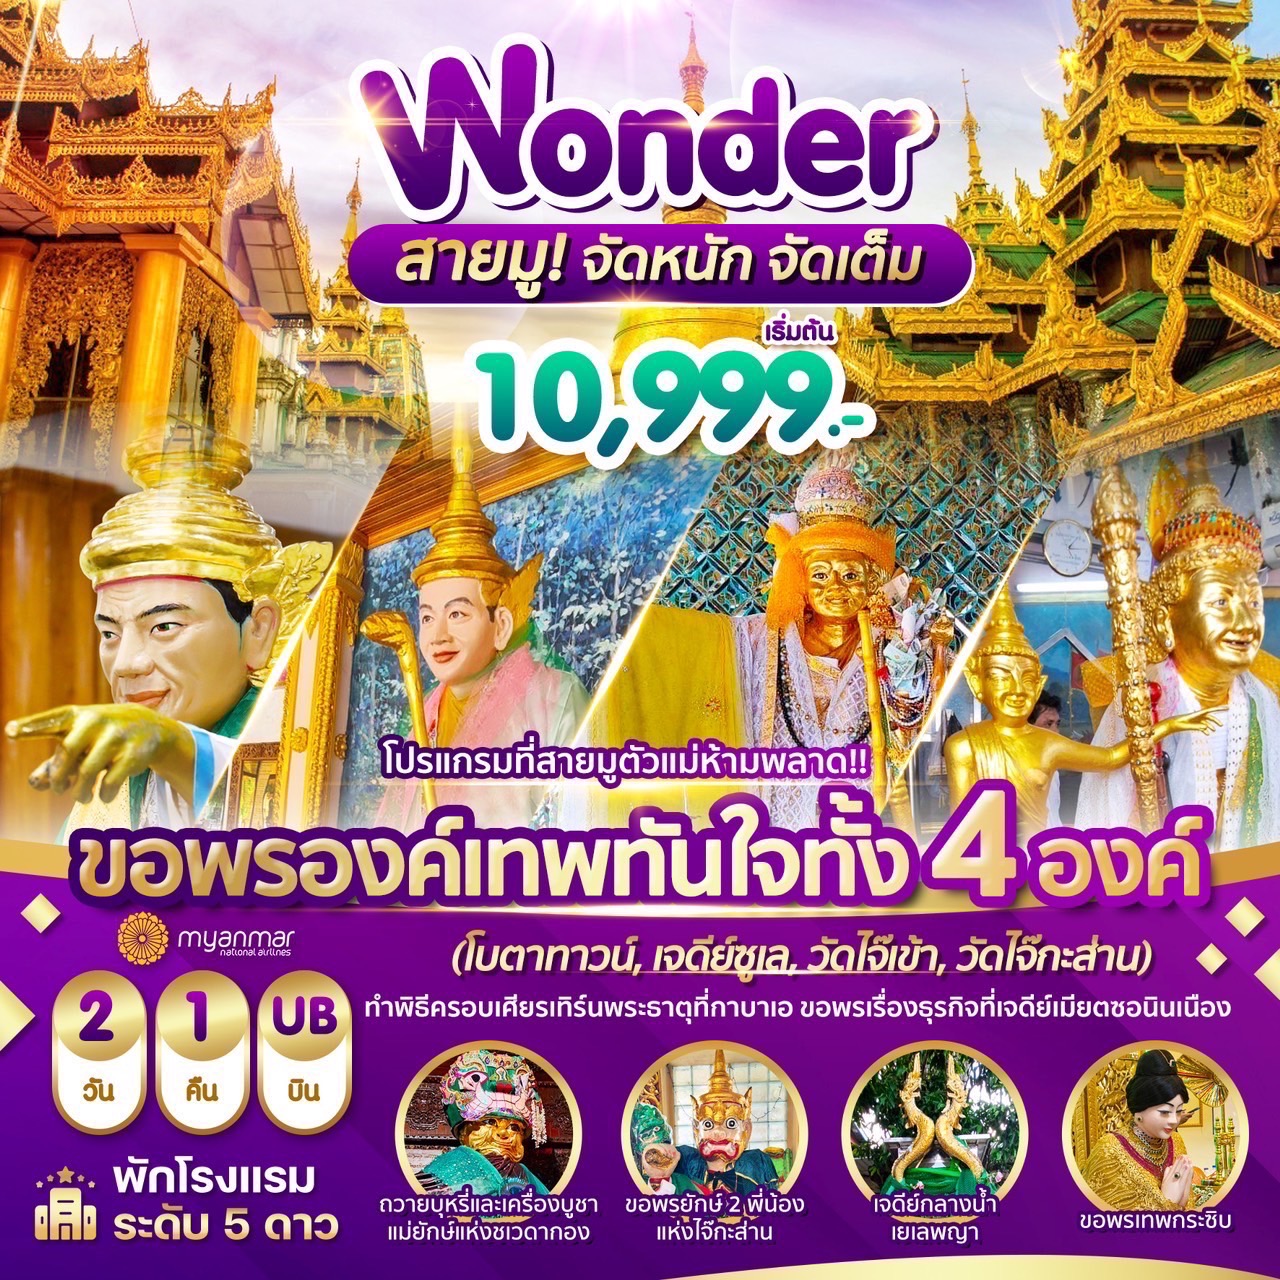 ทัวร์พม่า Wonder Myanmar ย่างกุ้ง สิเรียม 2 วัน 1 คืน